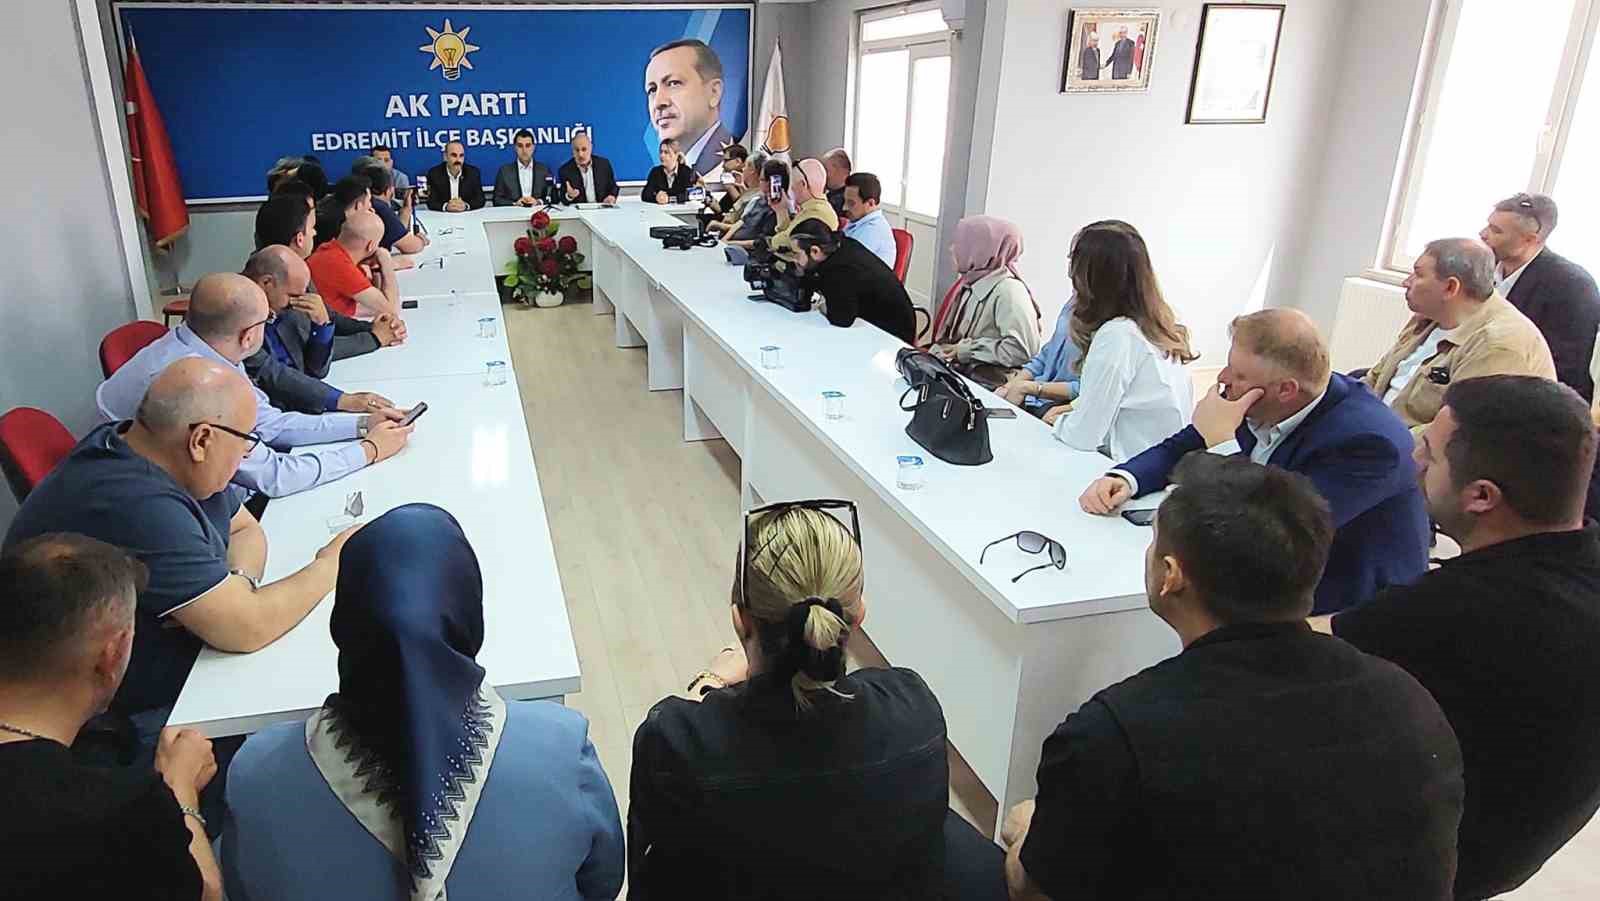 AK Parti Edremit İlçe Başkanı Tuna: “Milletin iradesine saygımız tam”
